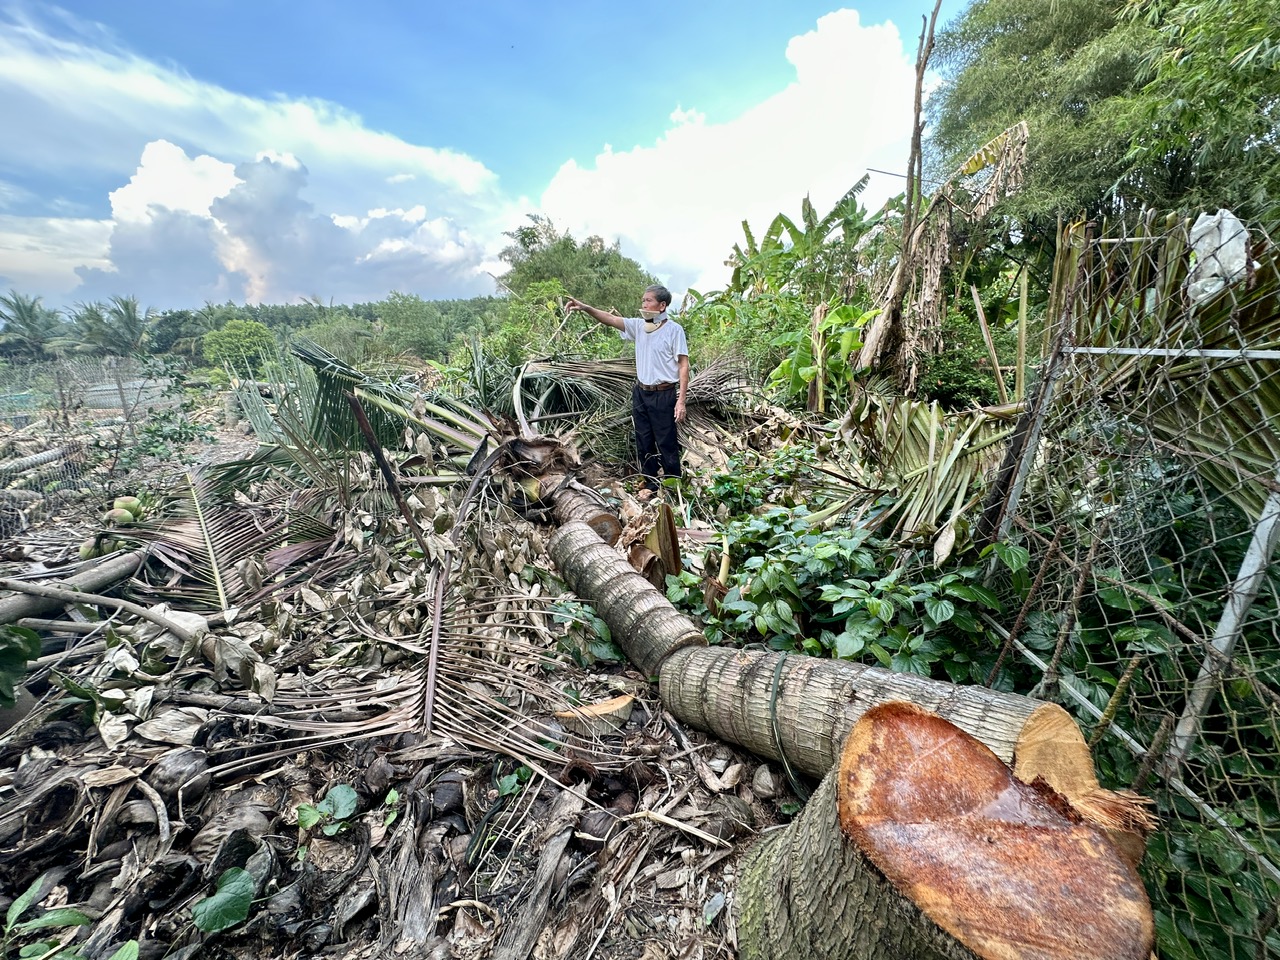 Đồng Nai: Bị chặt phá hàng loạt cây dừa đang ra trái, người dân cầu cứu - Ảnh 1.